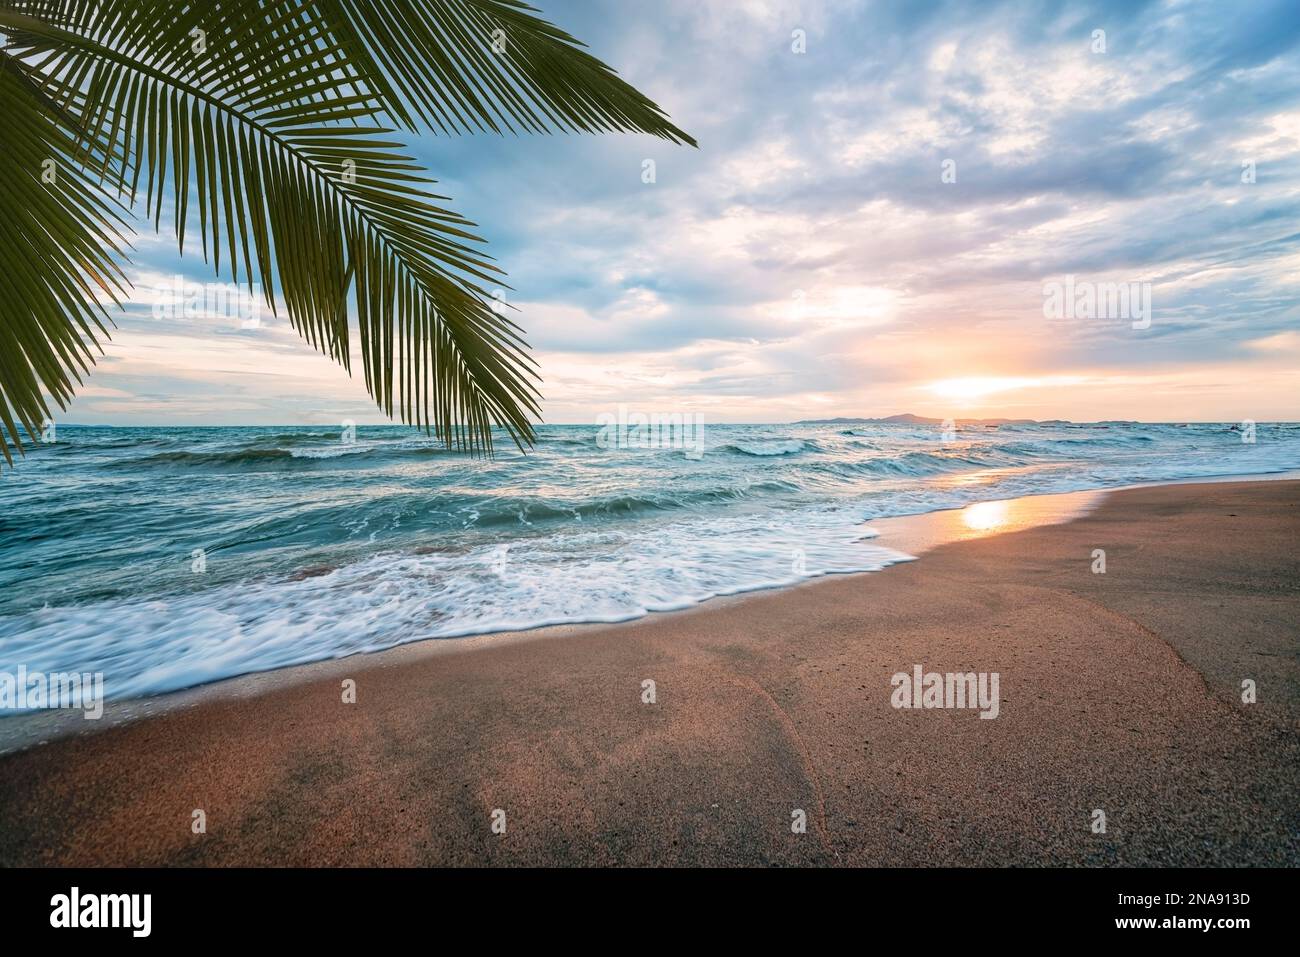 Jomtien Beach in Pattaya, Thailand Stock Photo